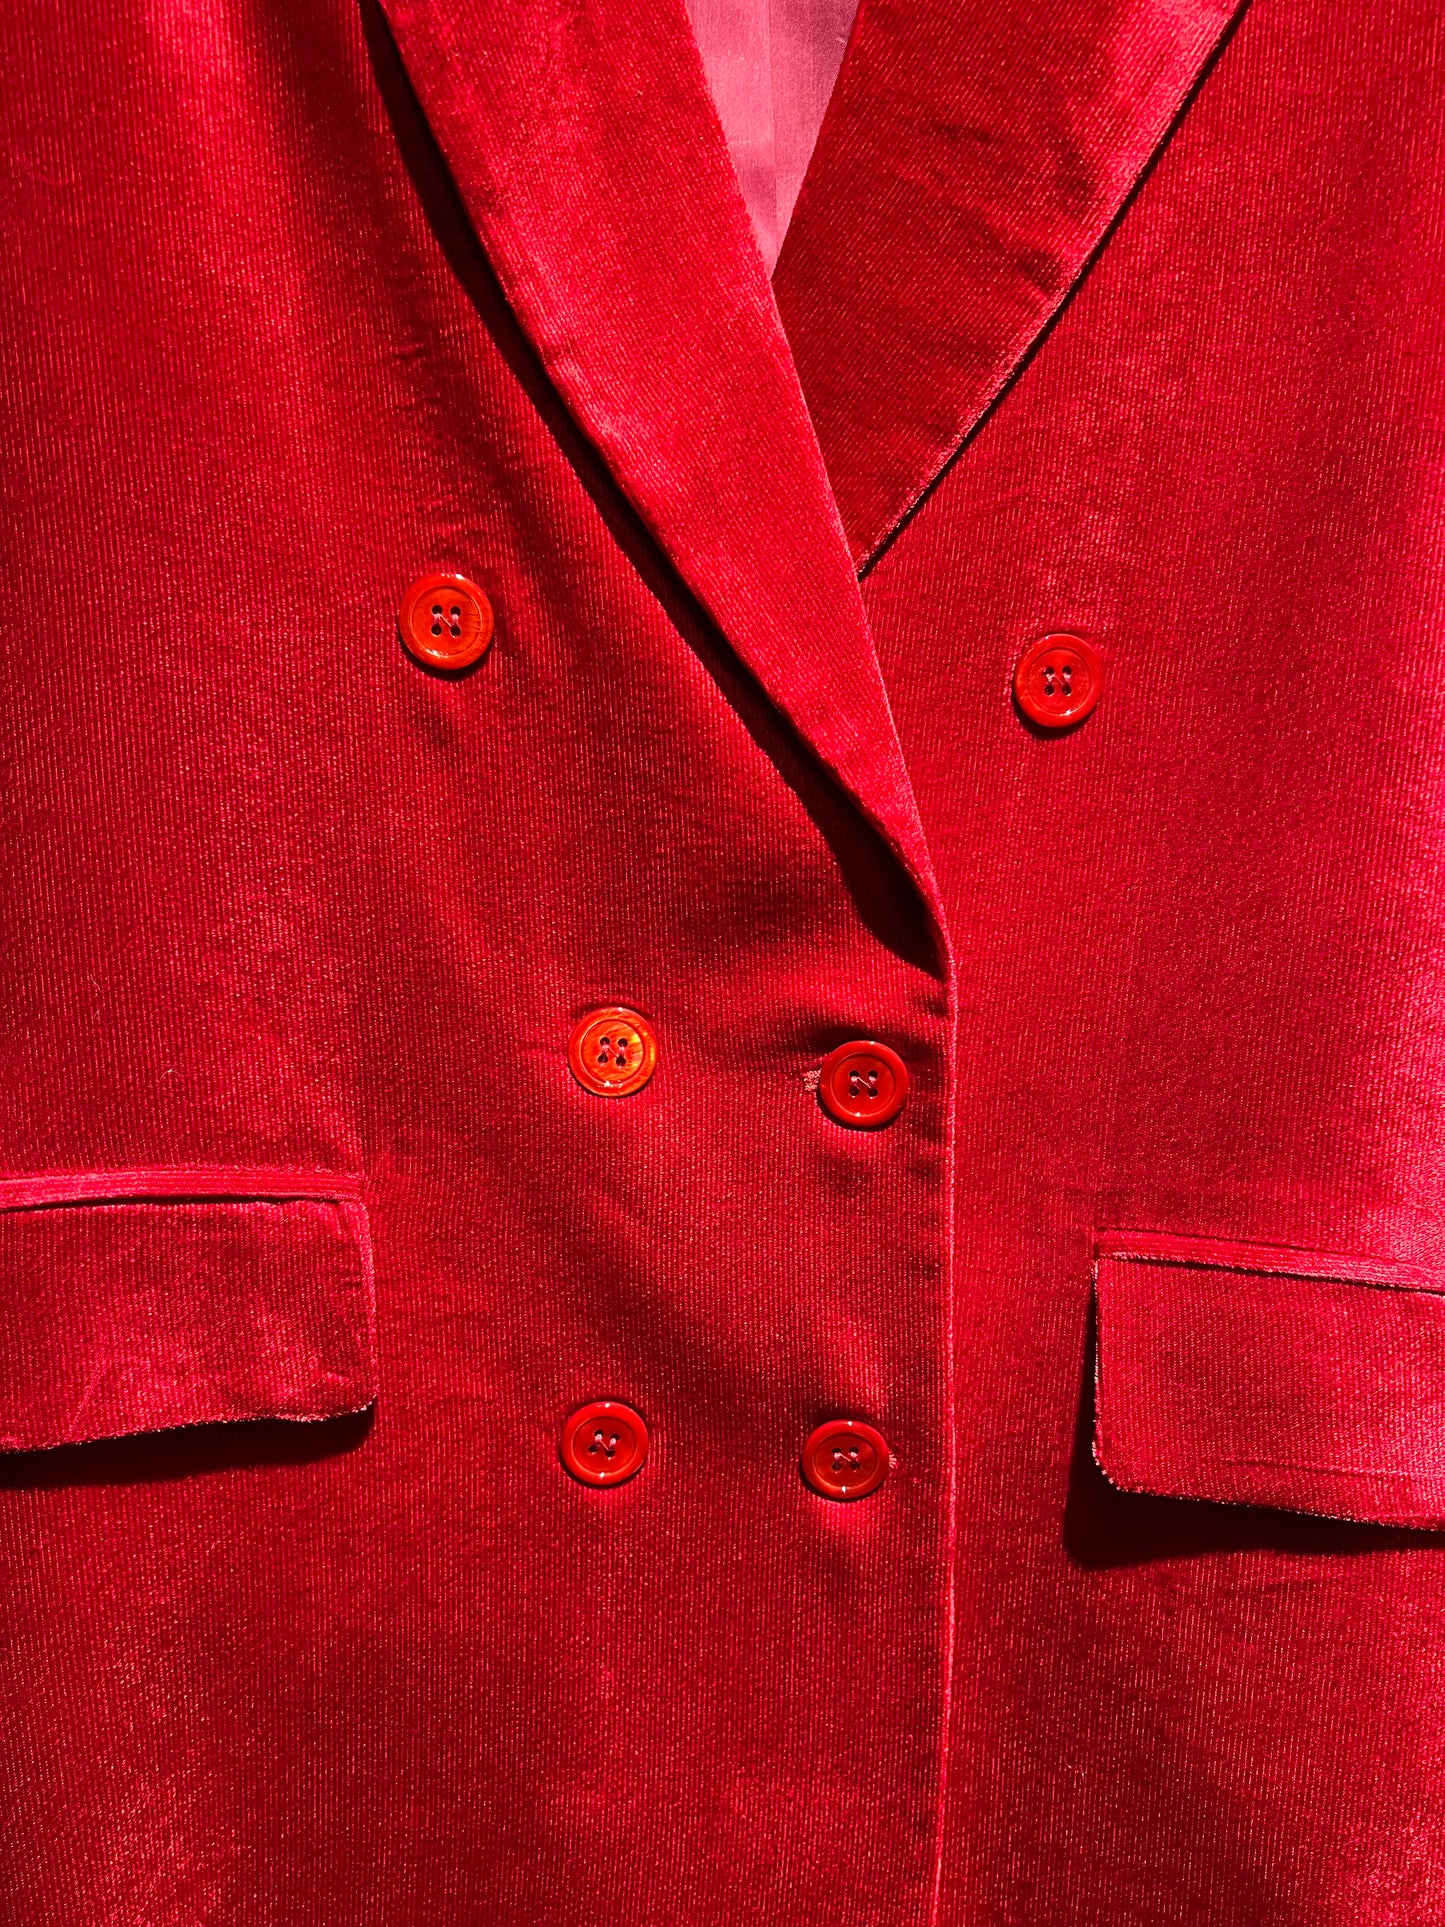 Hanami D’or giacca doppiopetto velluto rubino Otilde sconto 50%